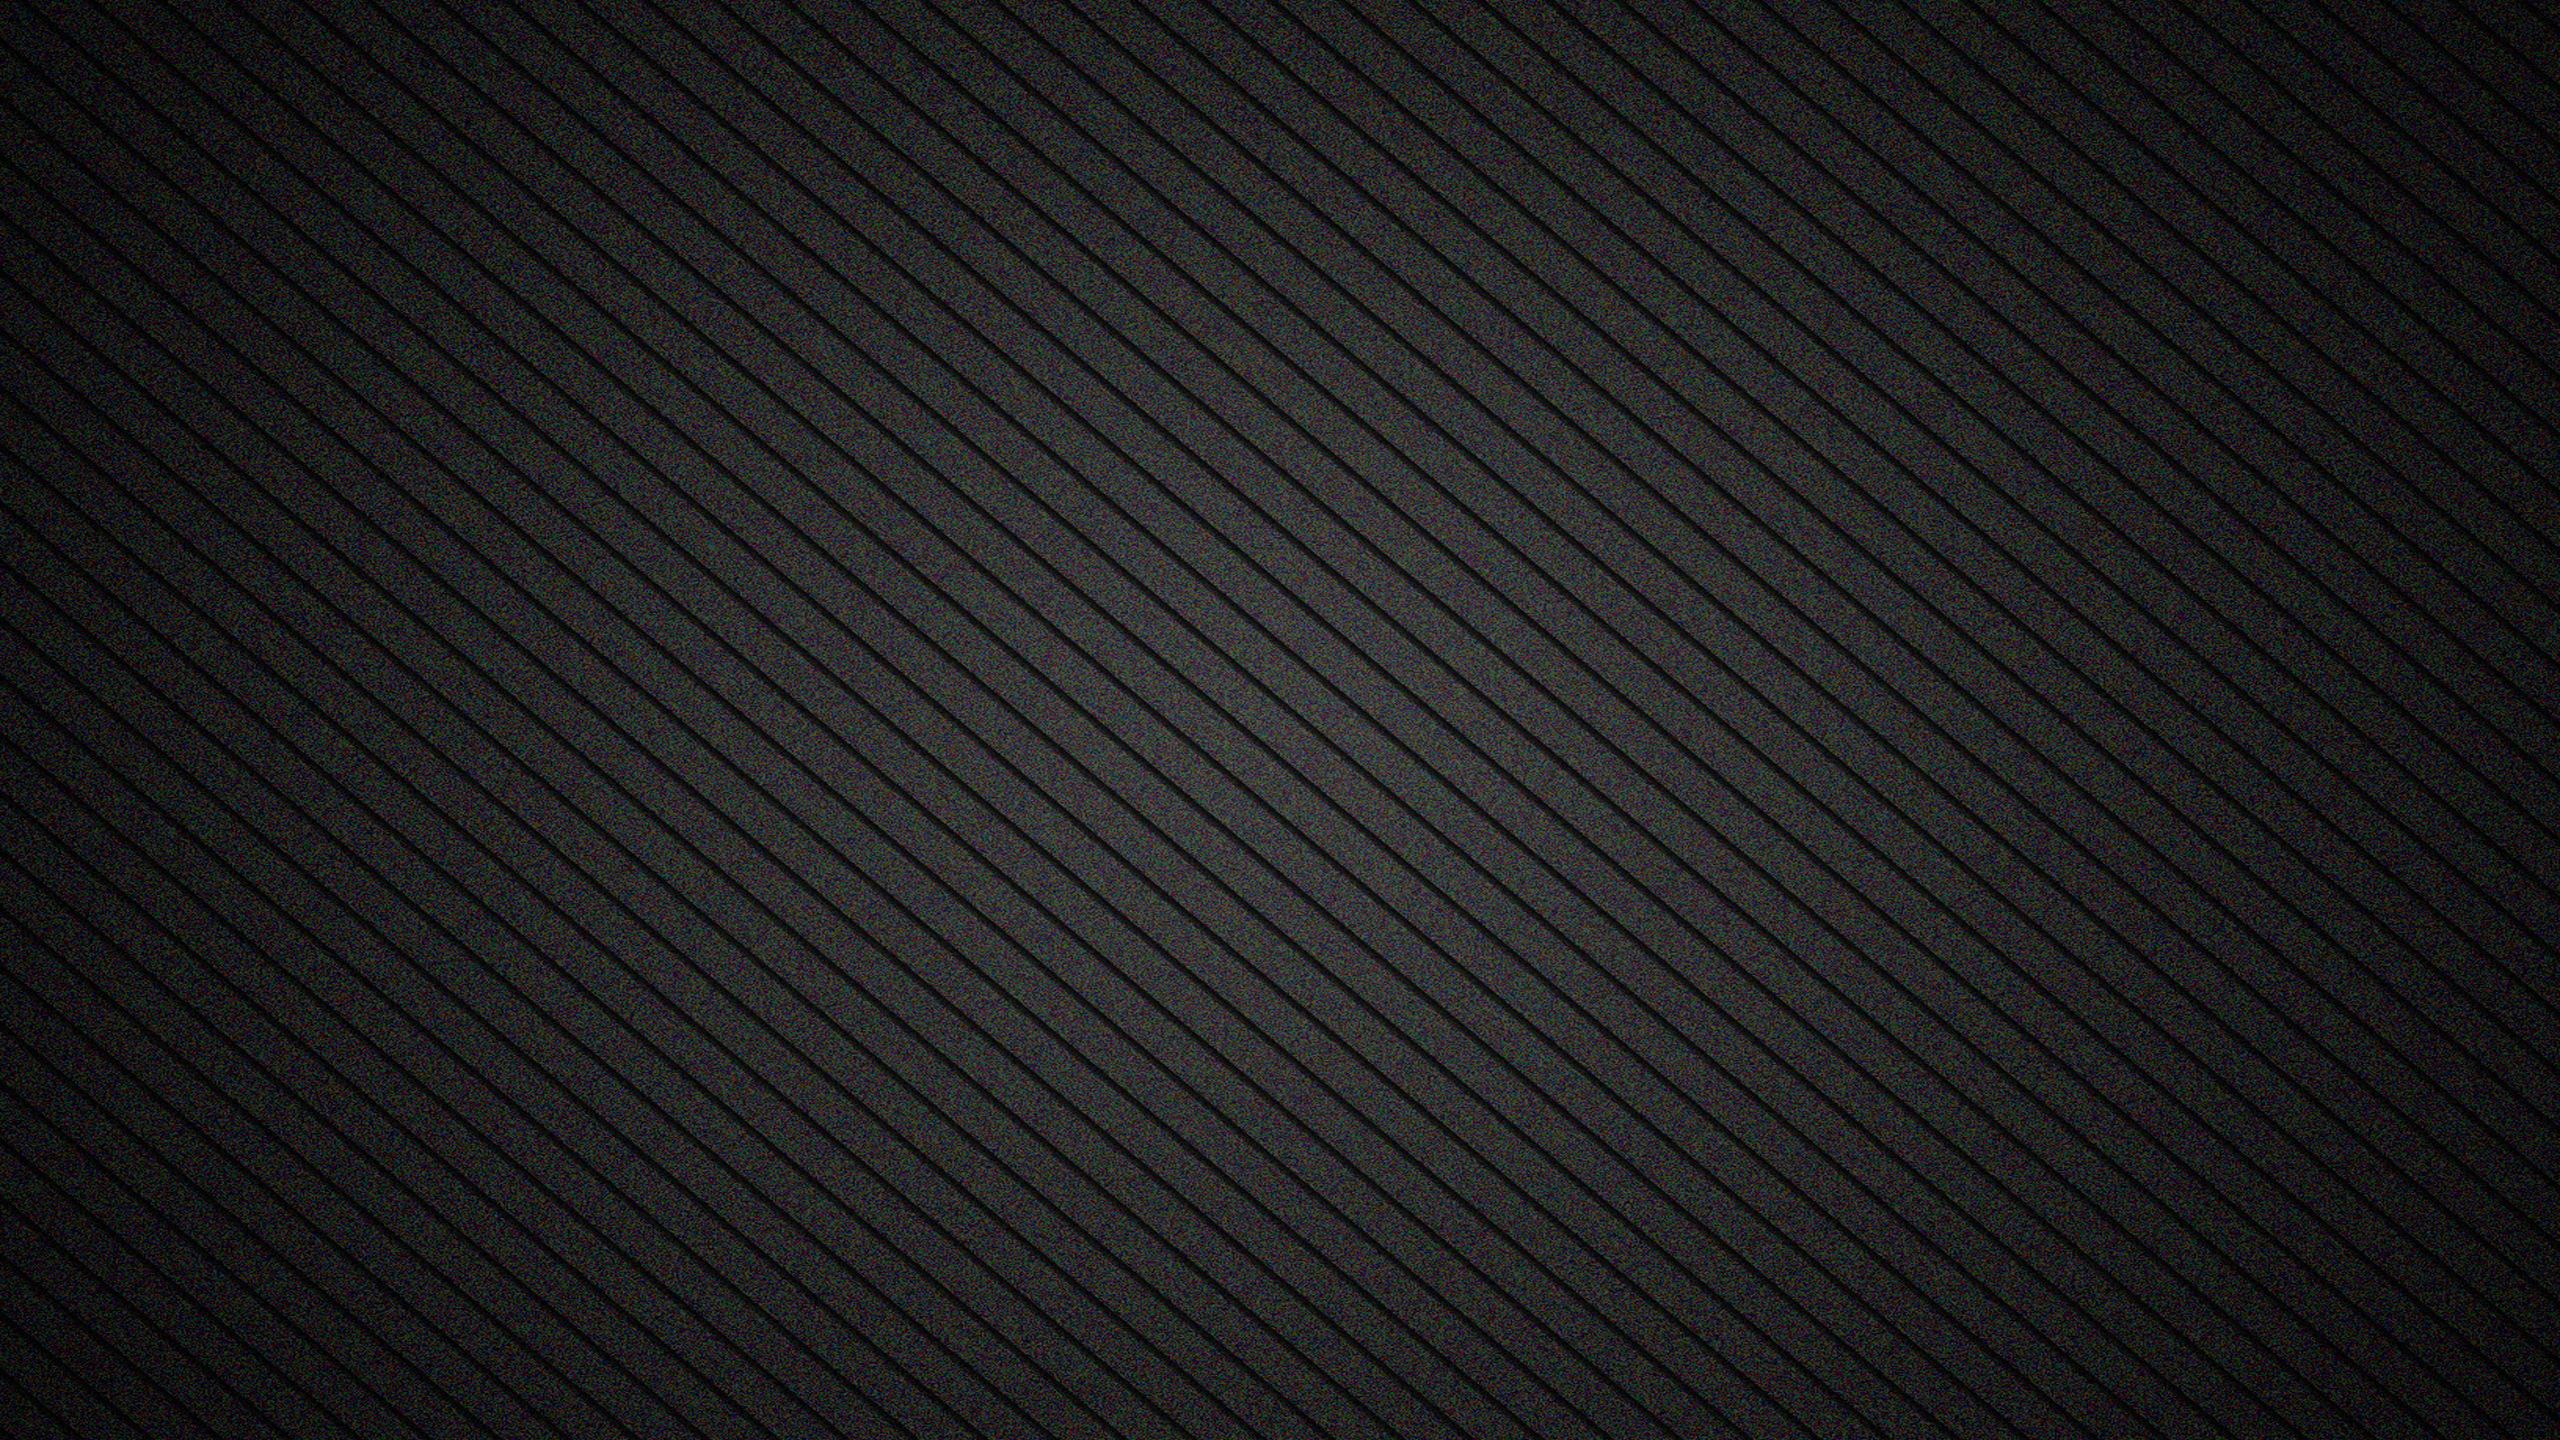 2560x1440 текстура, полосы, наискось, тень, фон, чёрный обои 16:9.